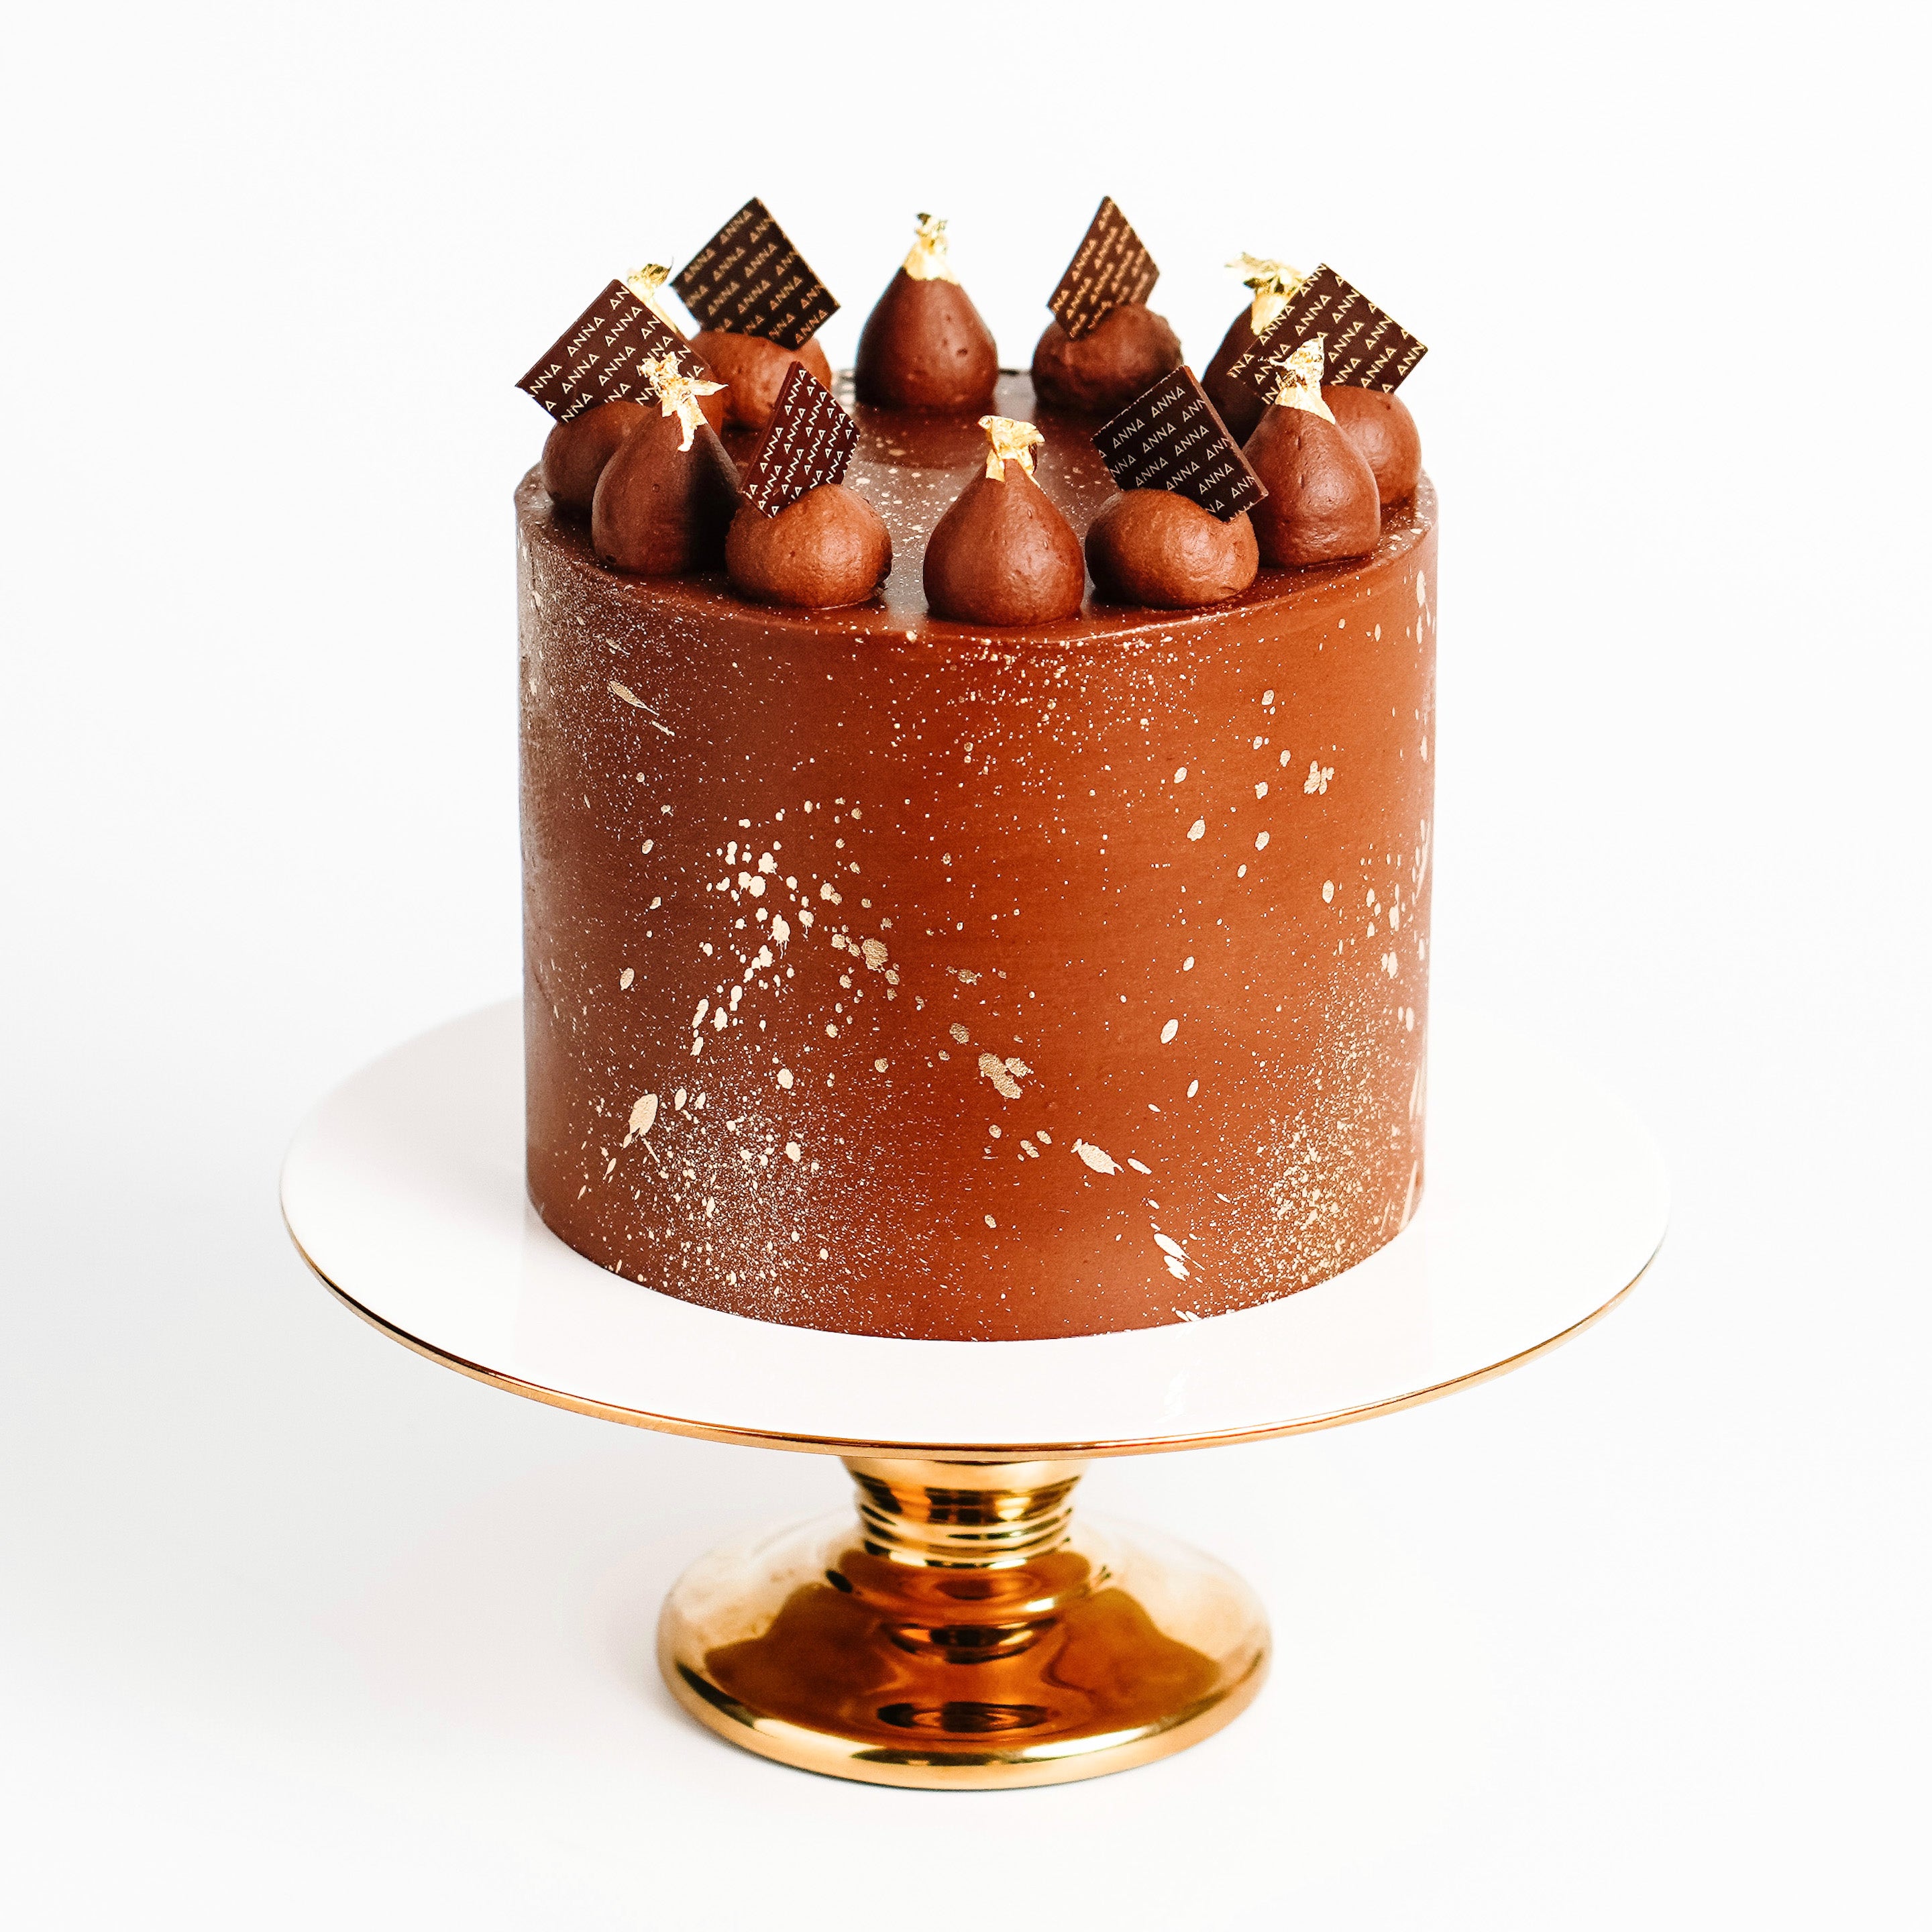 Vegan & Gluten Free Luxury Chocolate Cake